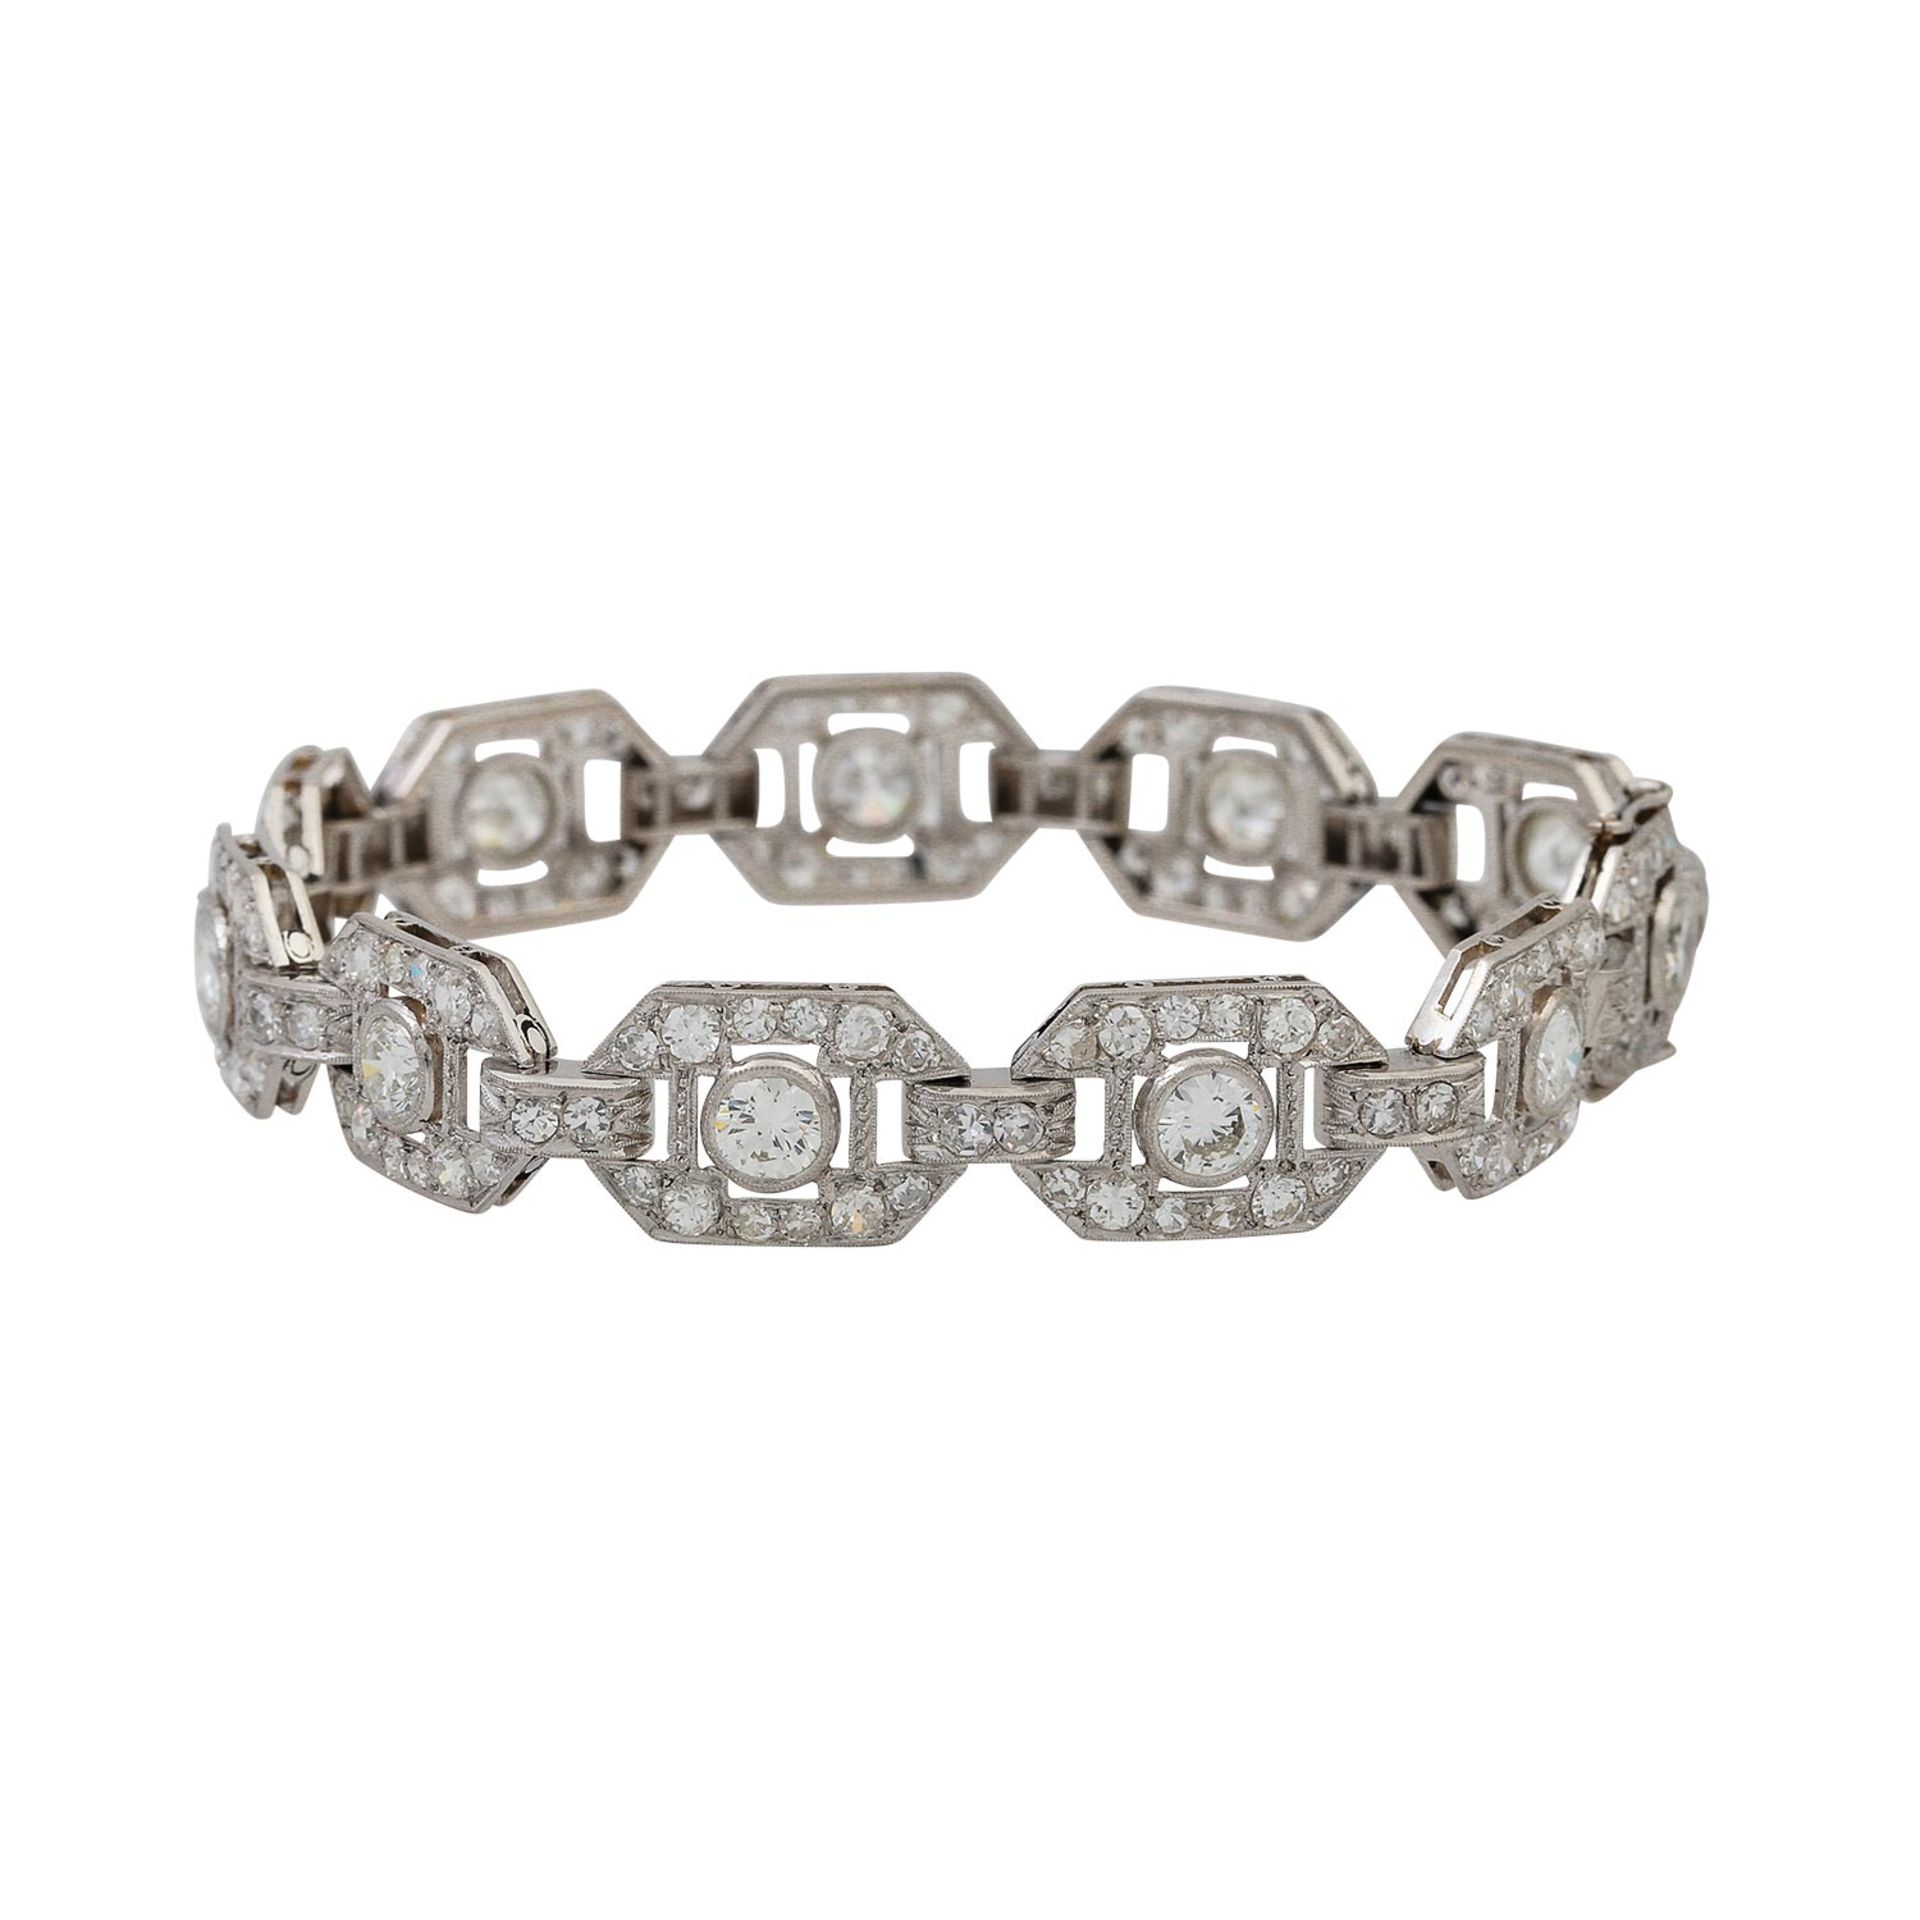 Art Déco feines Armband mit Diamanten von zus. ca. 7,2 ct, - Bild 2 aus 6